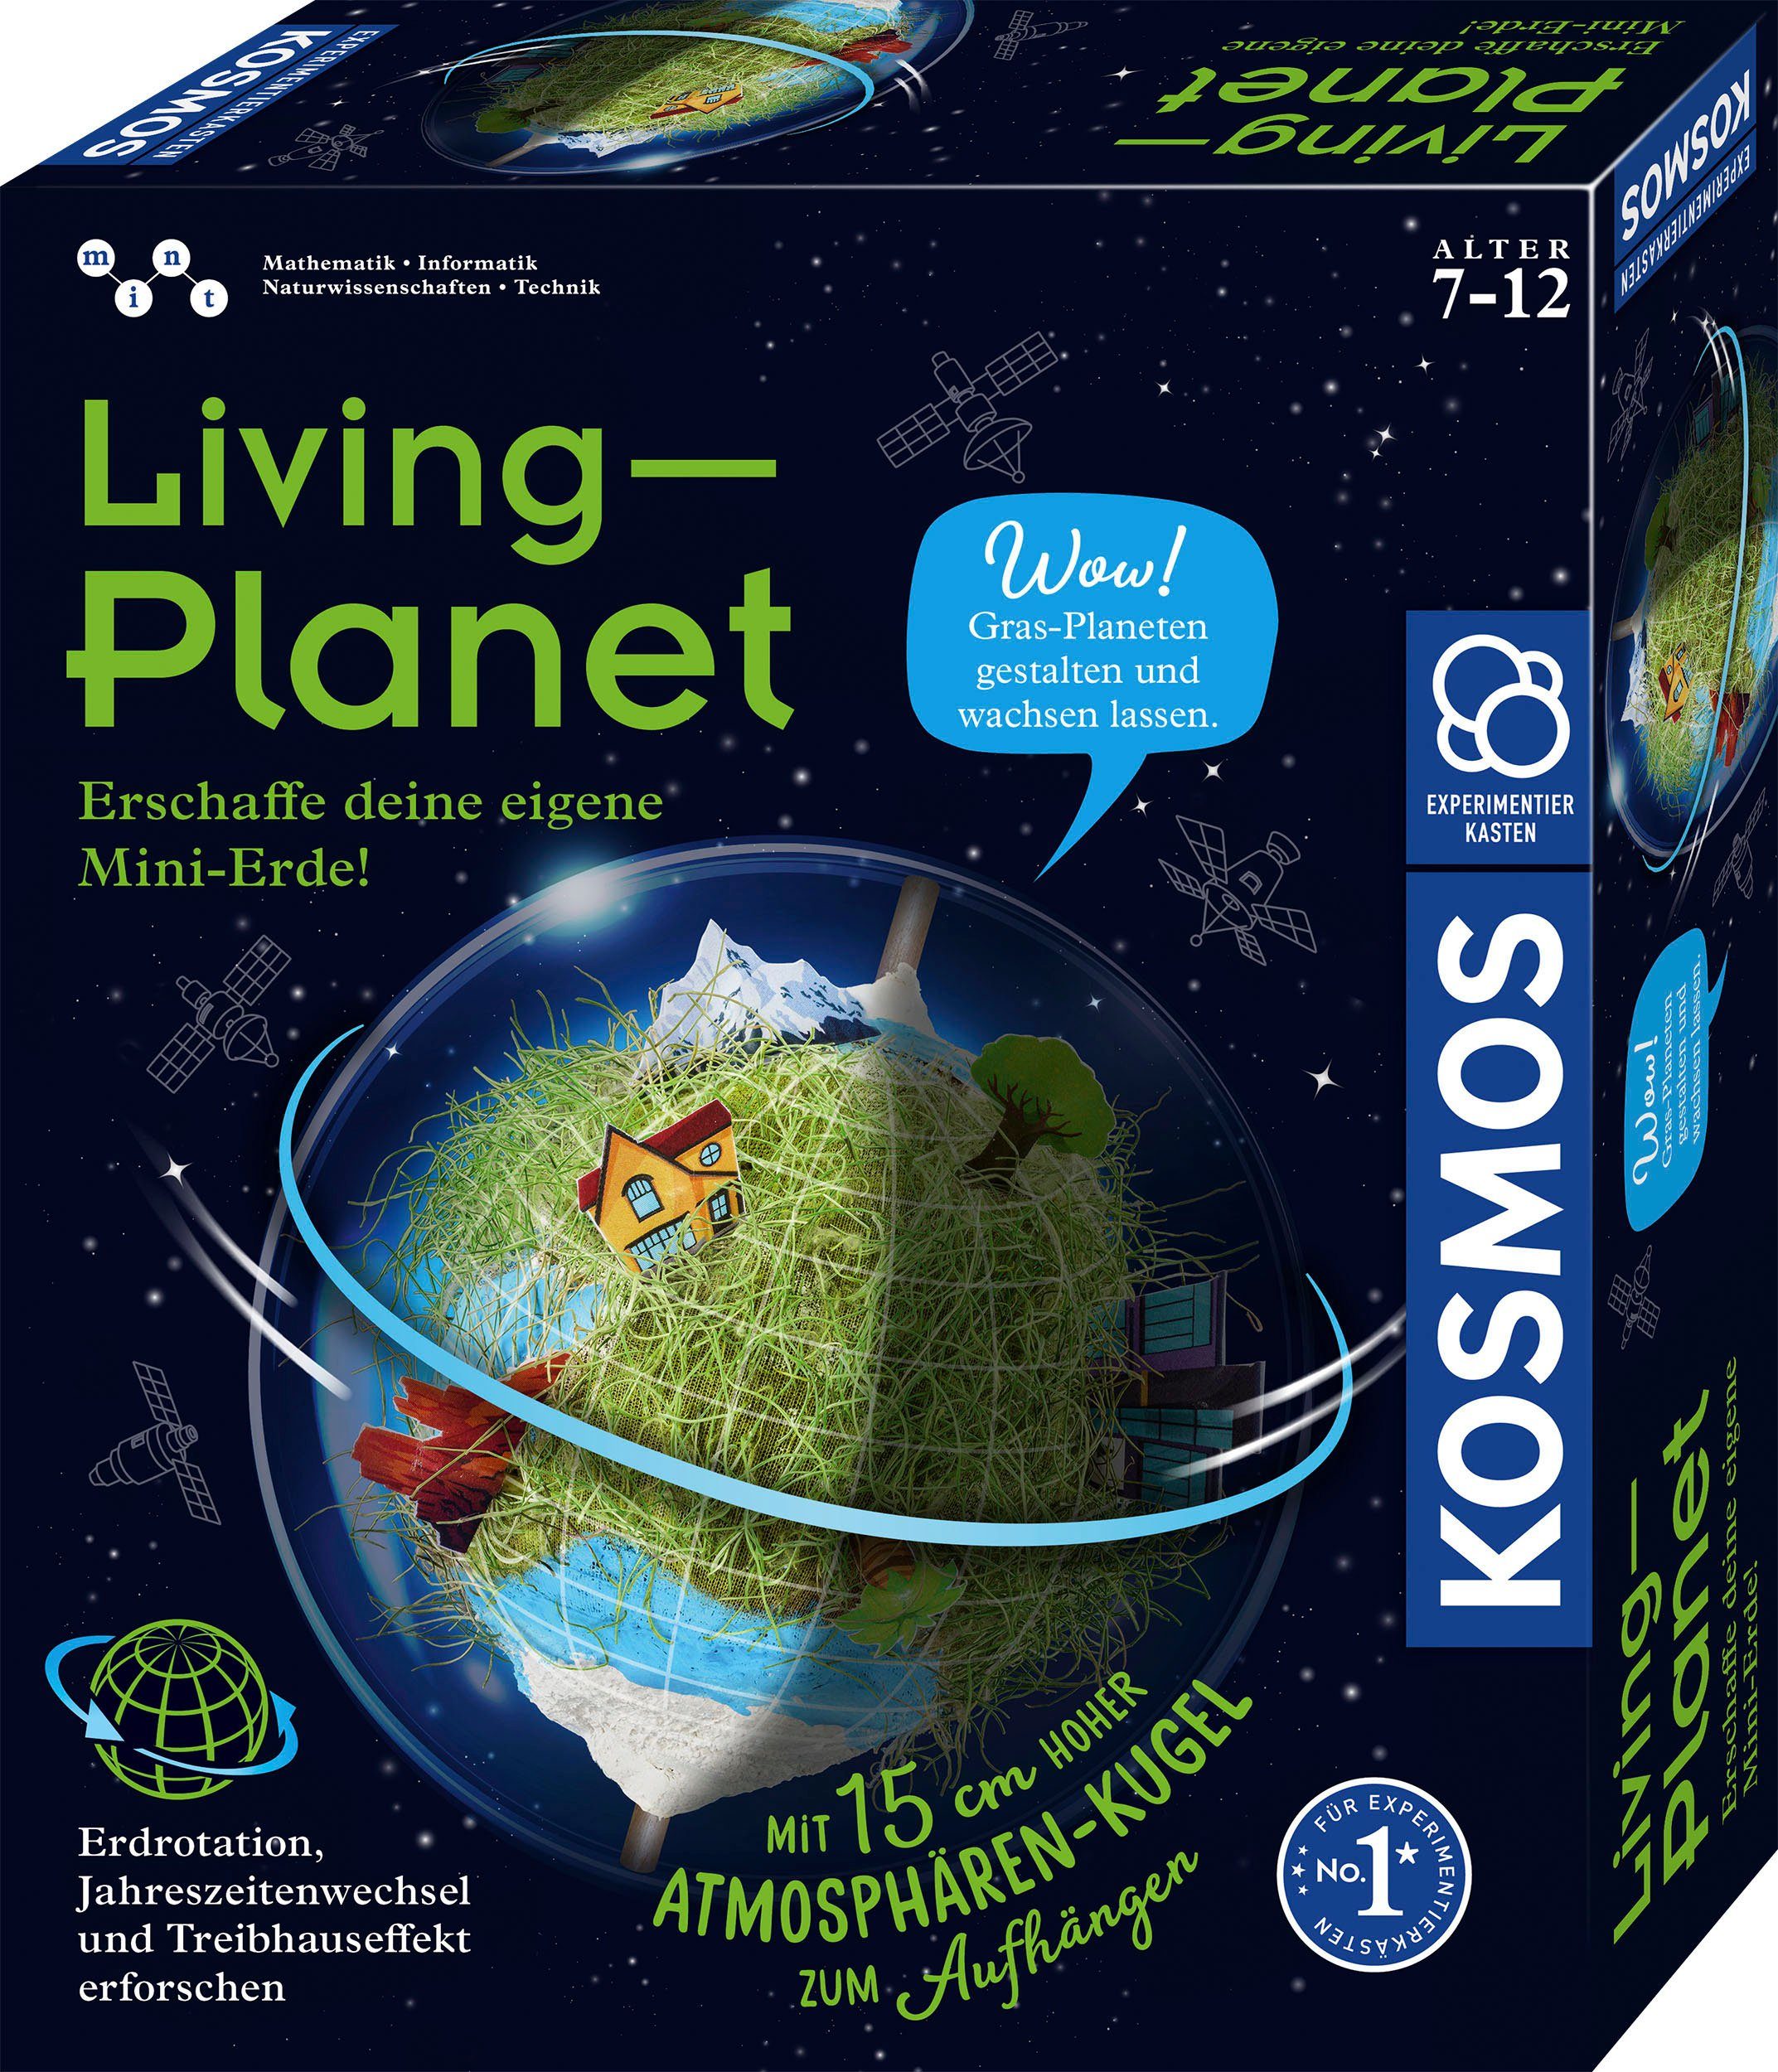 Kosmos Experimentierkasten Living Planet, Made in Germany, Mit 15 cm hoher  Atmosphären-Kugel zum Aufhängen